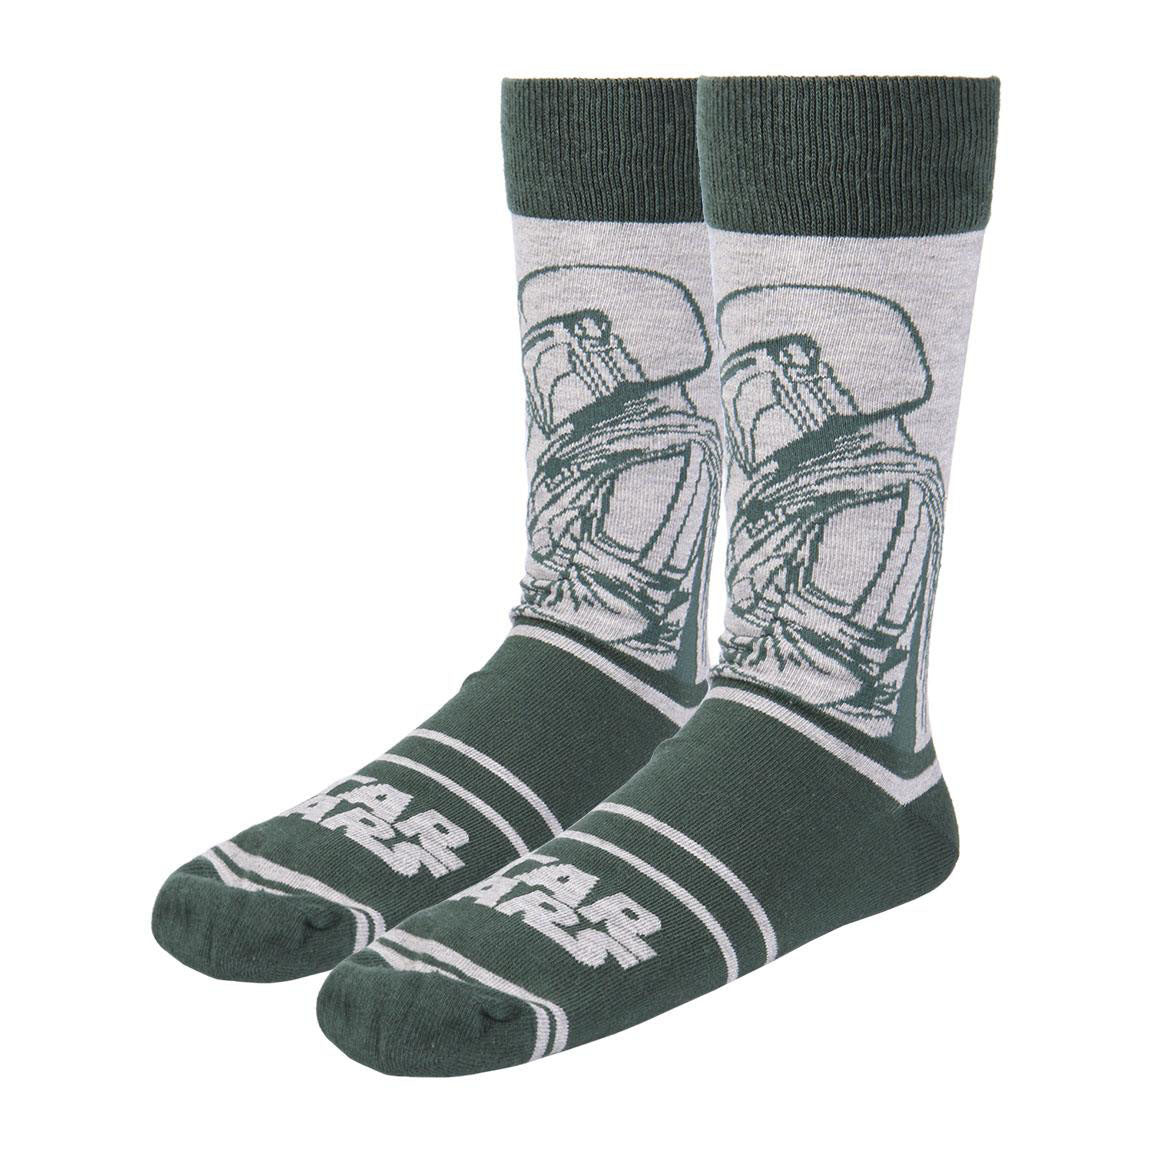 Star Wars: The Mandalorian pack 3 pairs of socks - Mandalorian 